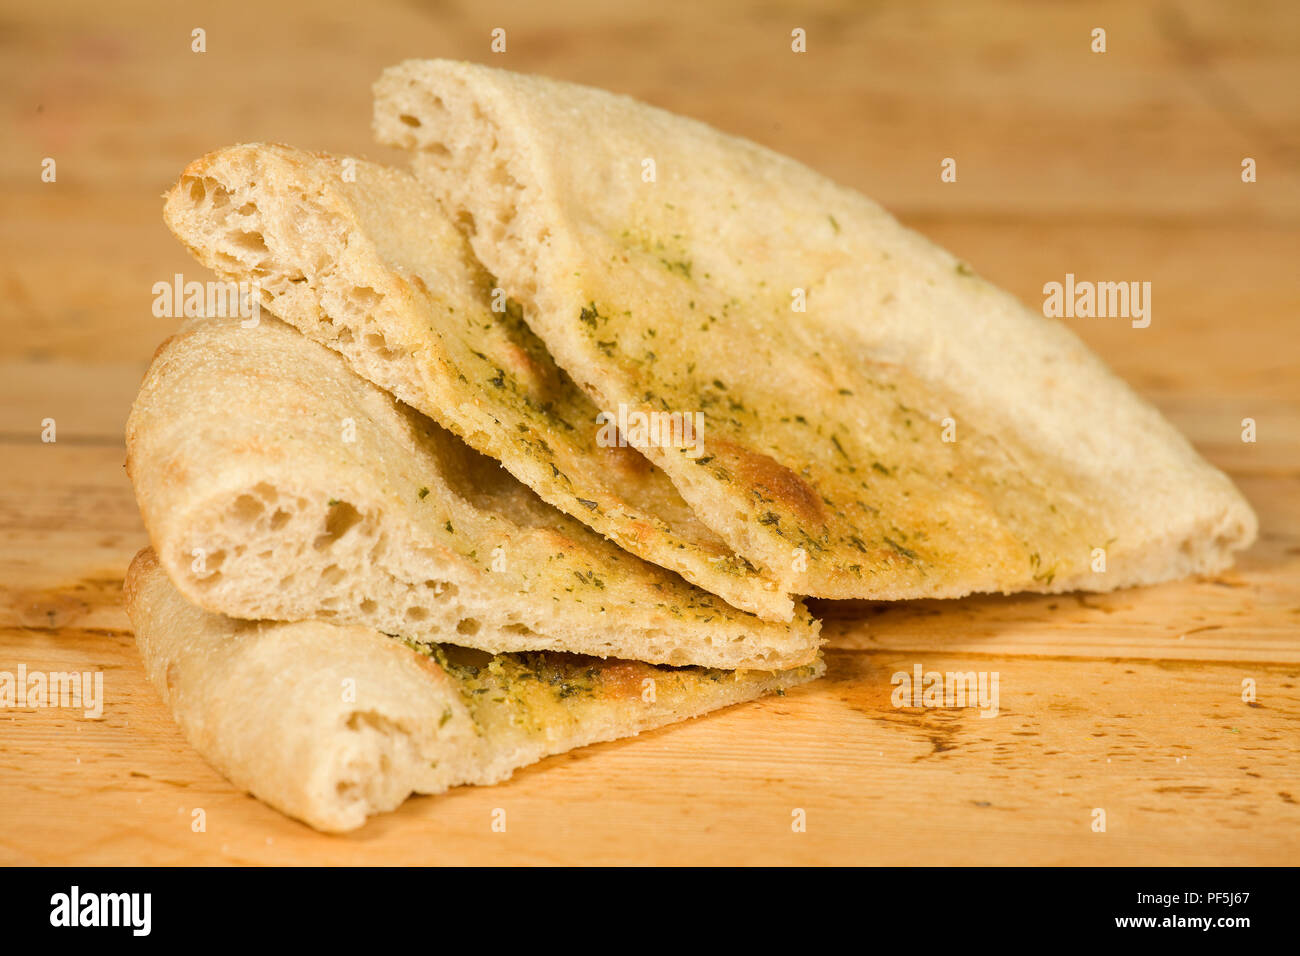 Tranches de pain sur la table Banque D'Images